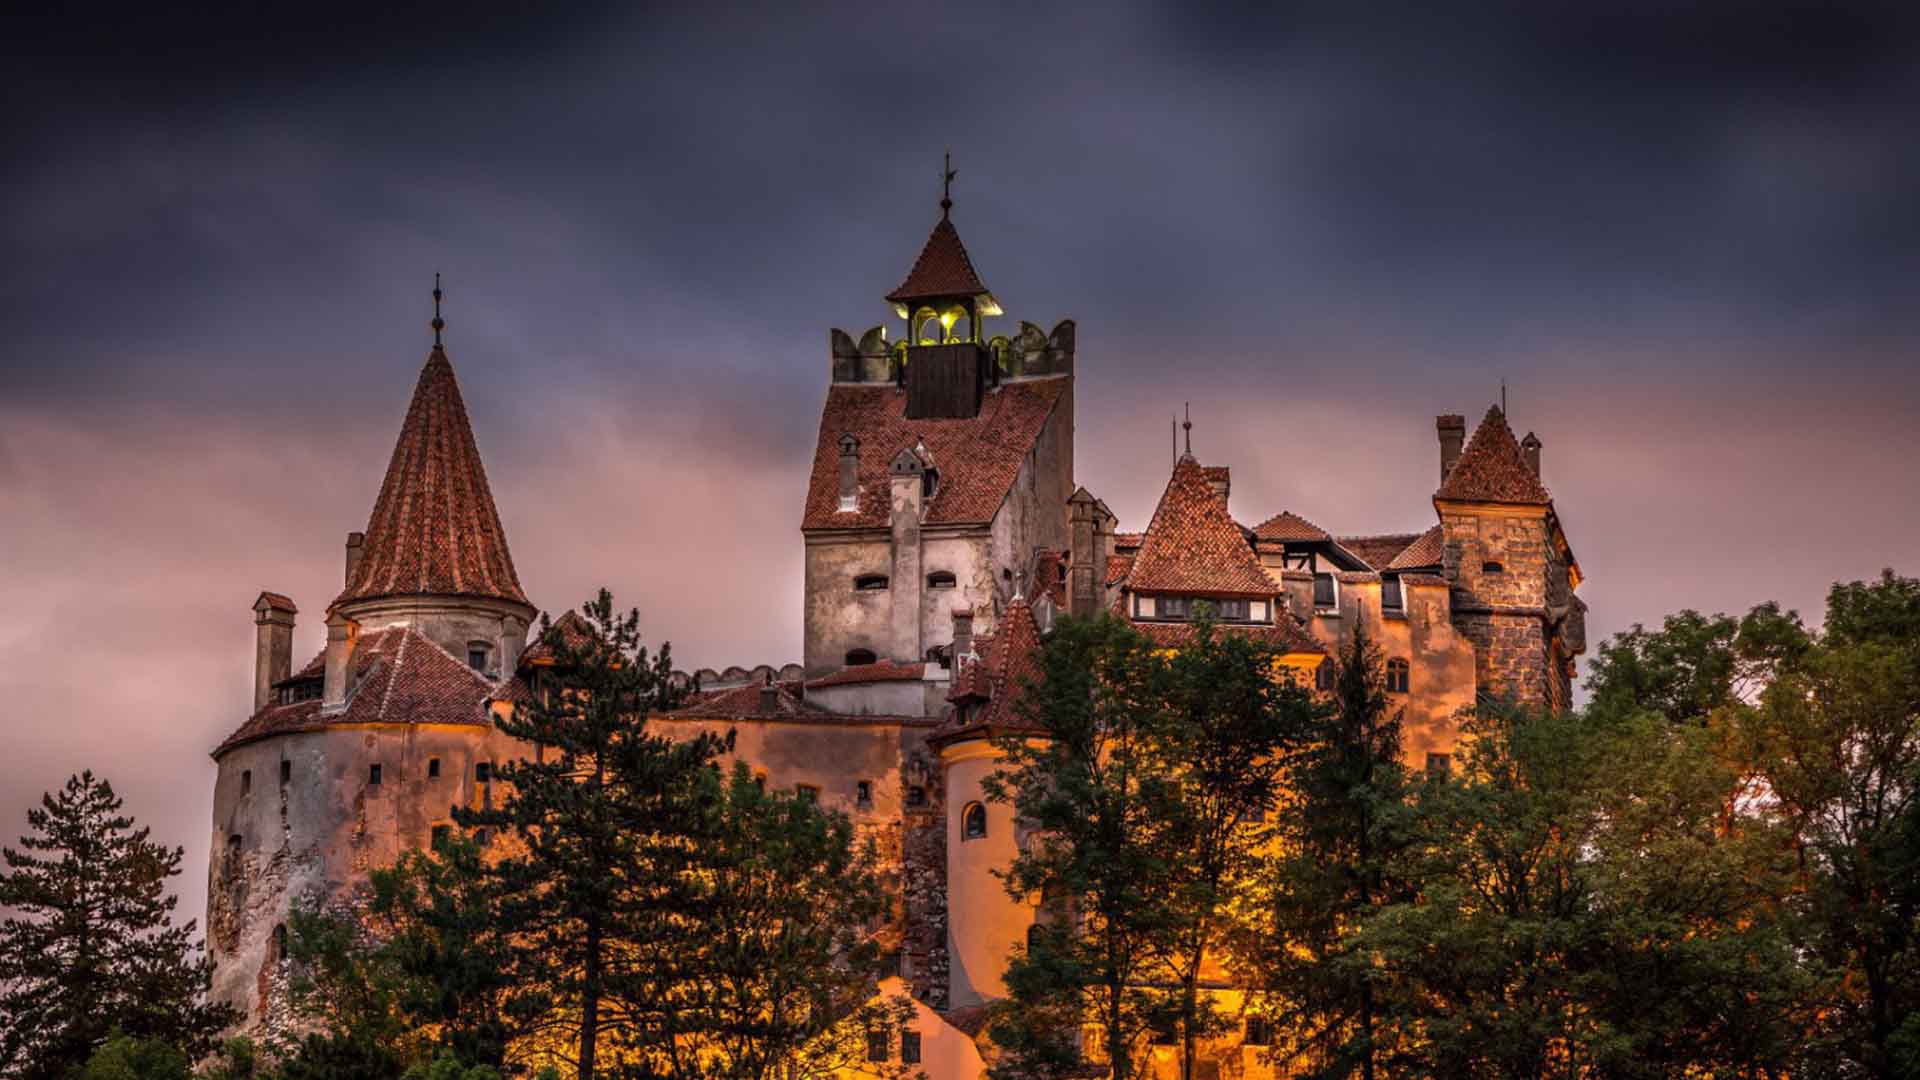 La empresa Airbnb lanzó un concurso para pasar una noche en el verdadero Castillo Bran en Rumania